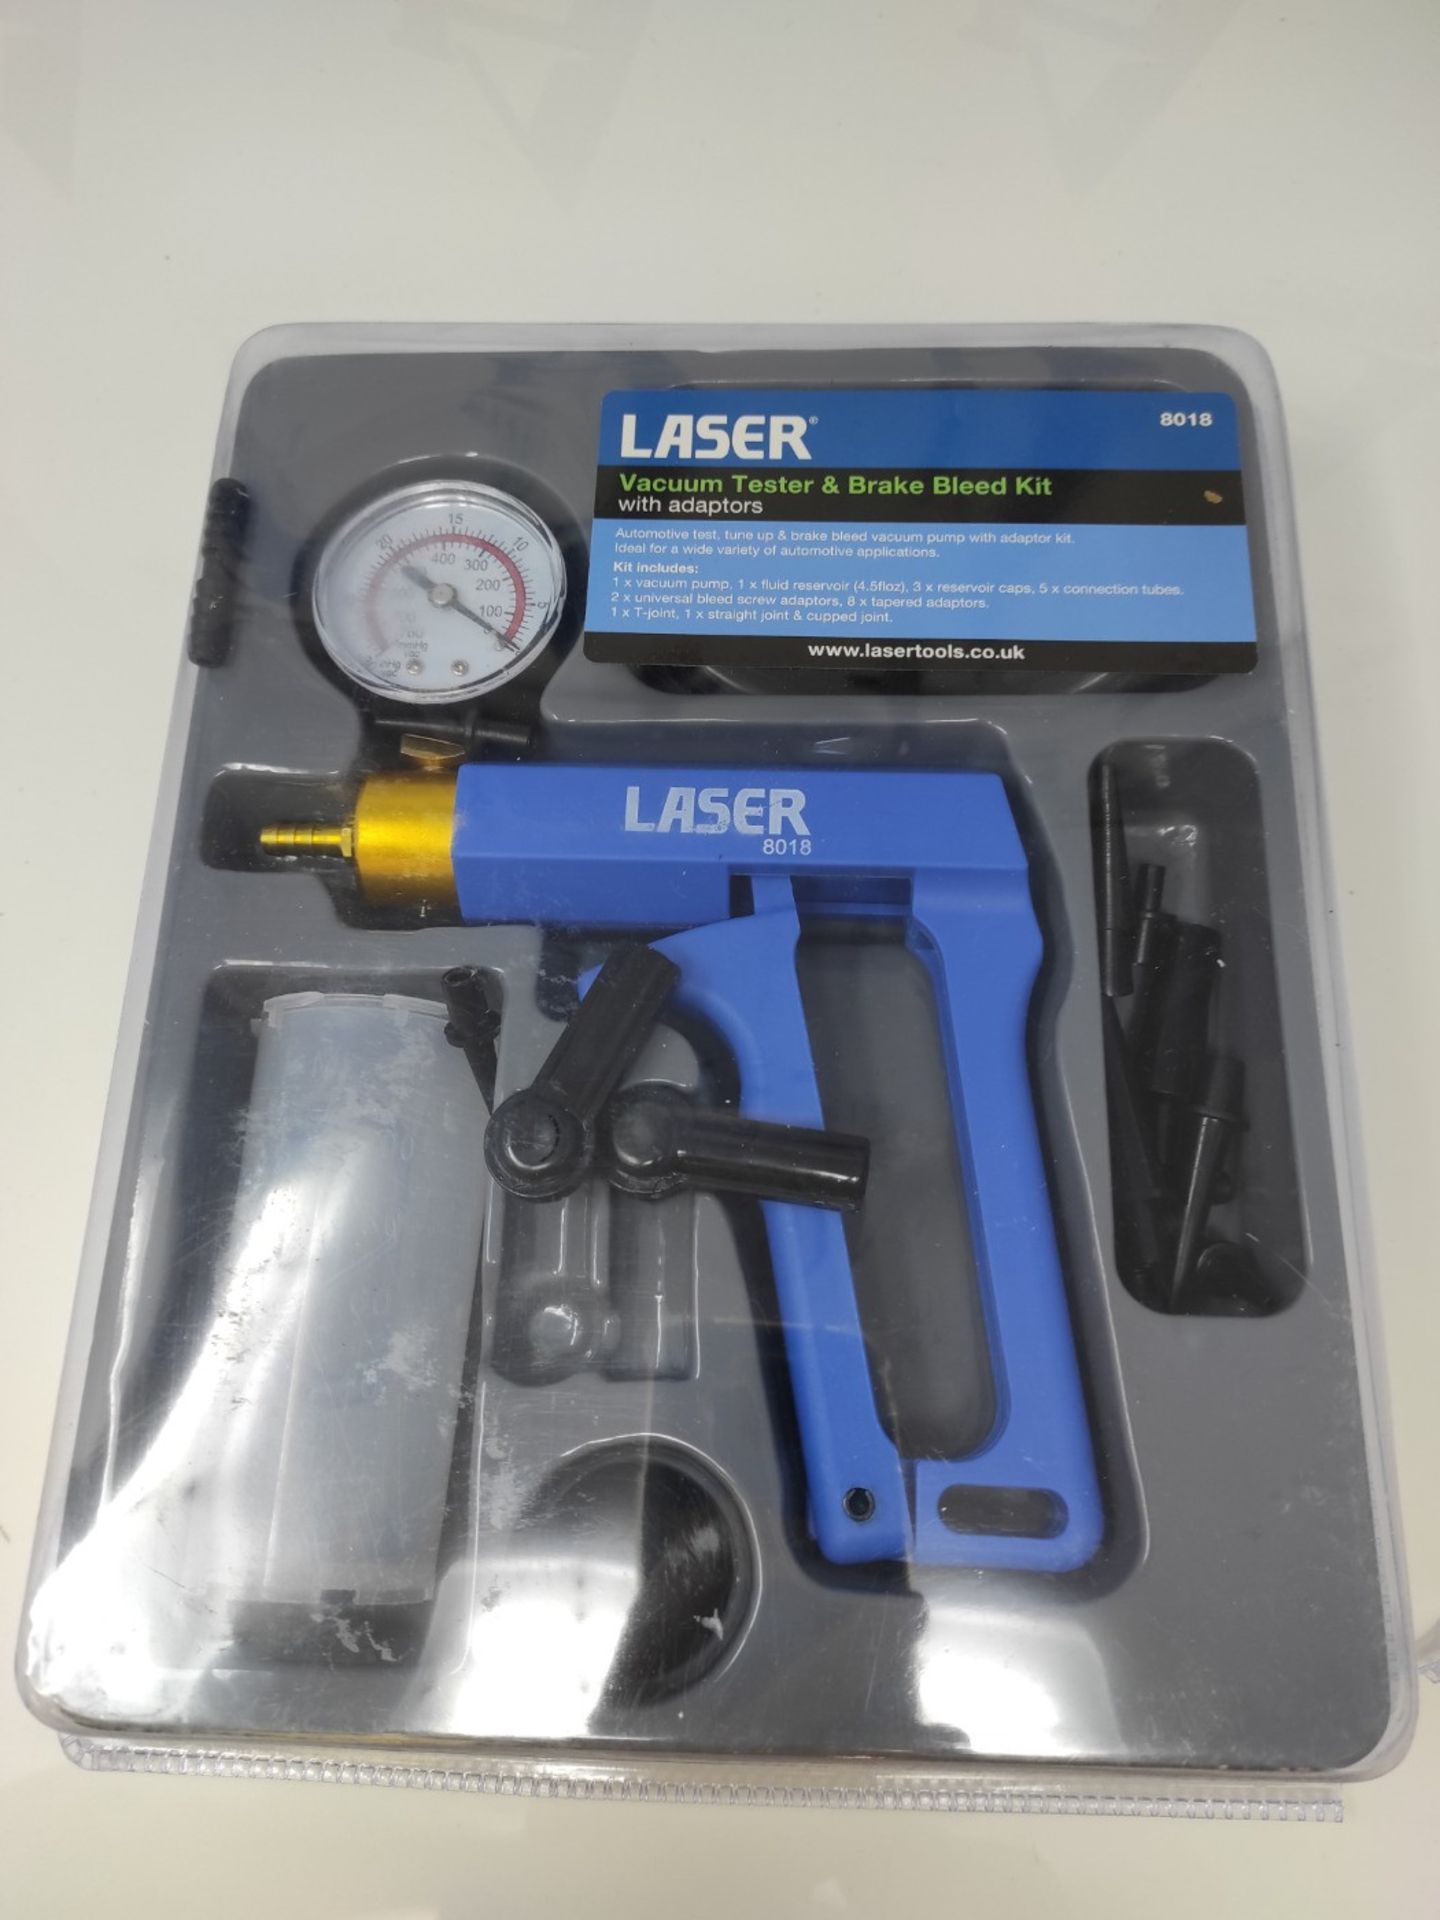 Laser 8018 Vacuum Tester & Brake Bleed Kit - Image 2 of 2